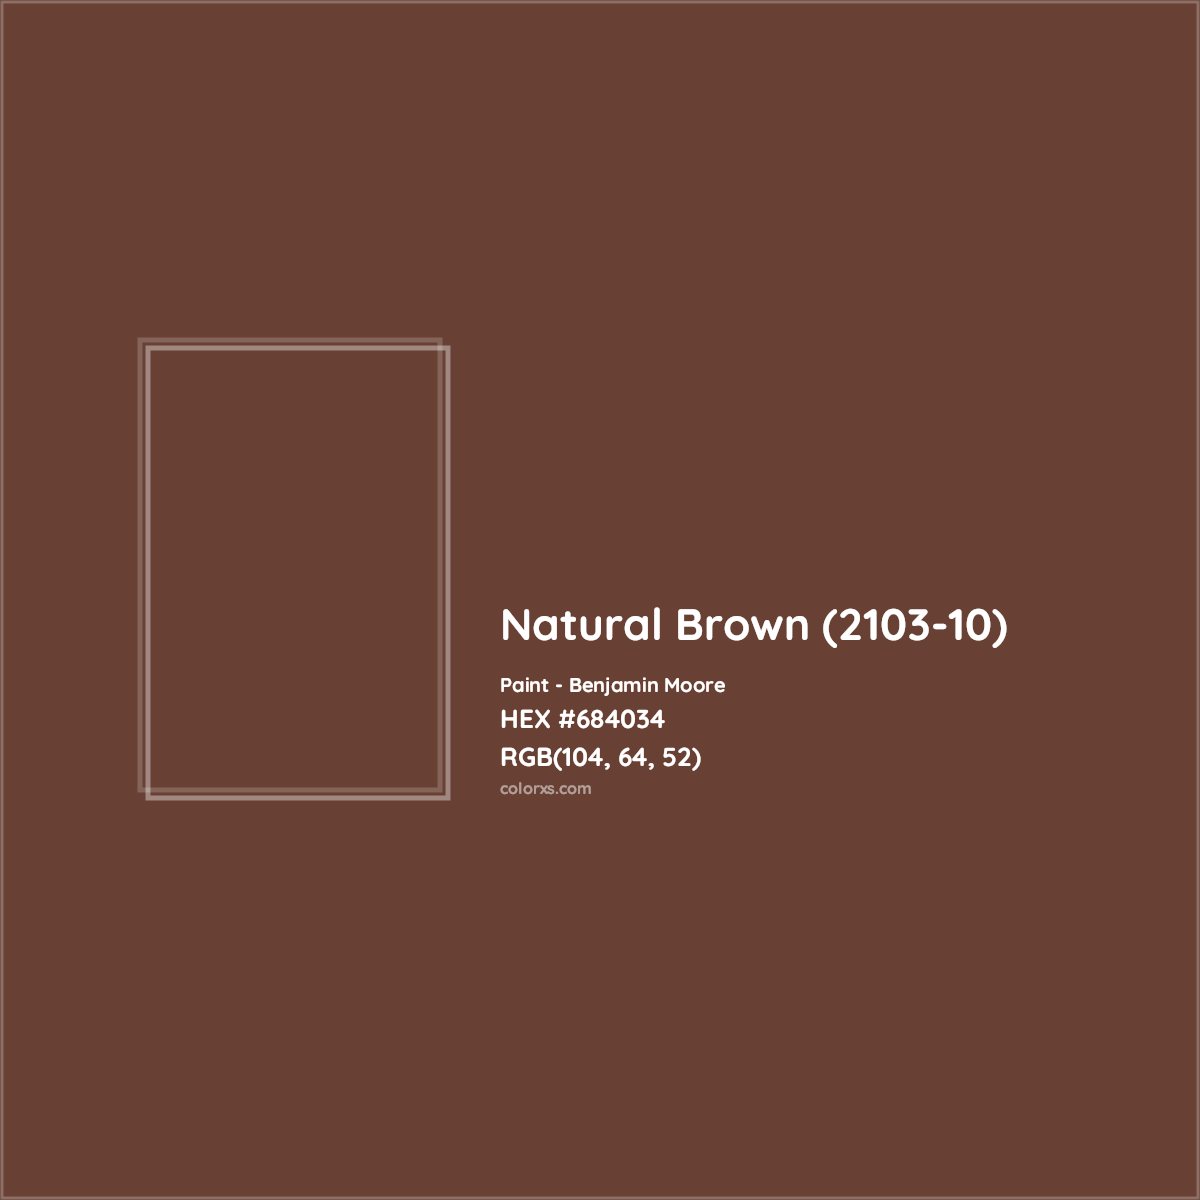 HEX #684034 Natural Brown (2103-10) Paint Benjamin Moore - Color Code